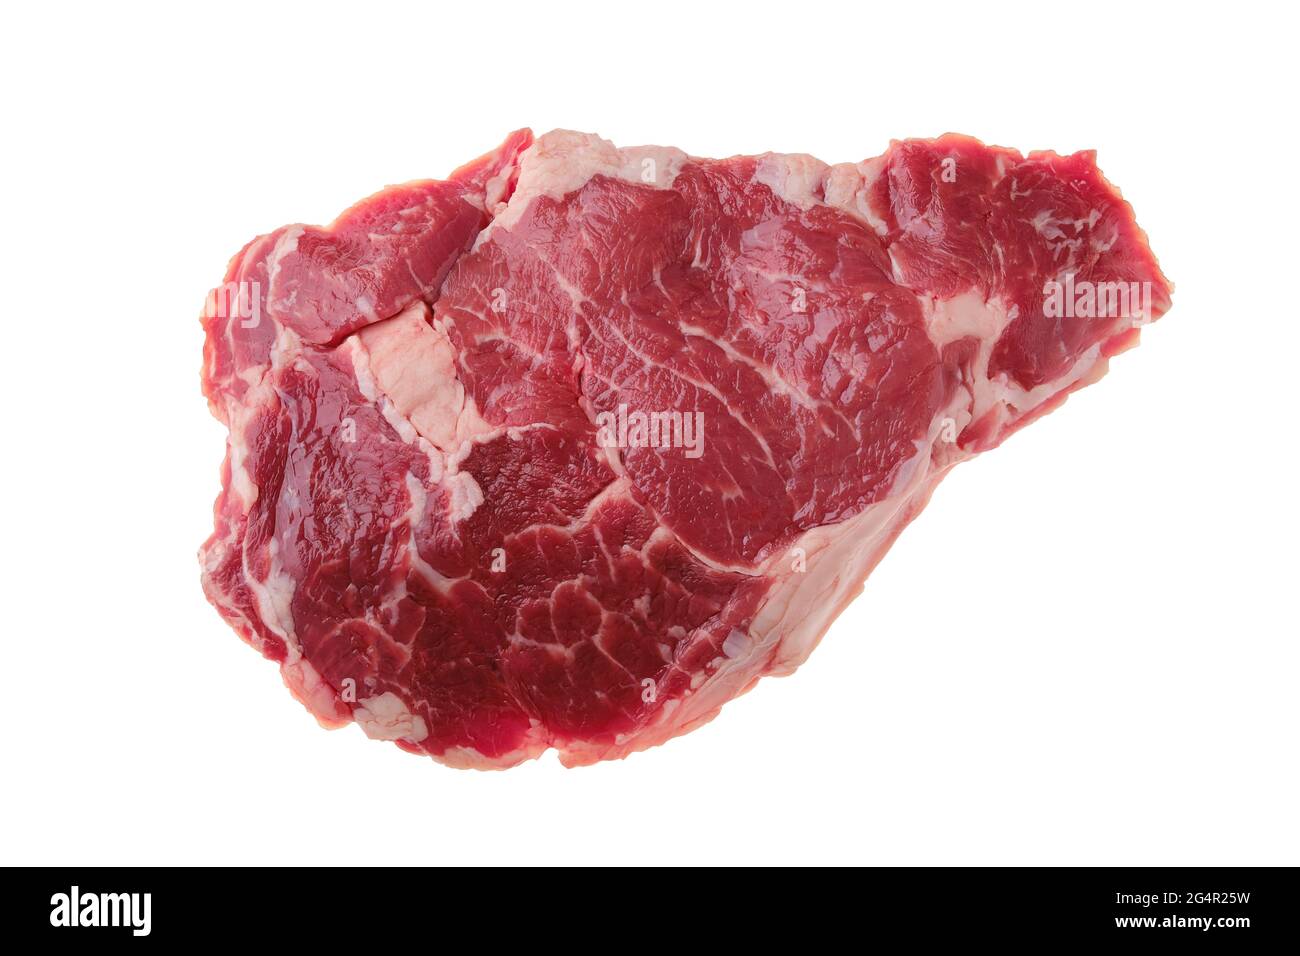 Vue en hauteur du steak de ribeye cru, viande désossée de bœuf de qualité supérieure isolée sur fond blanc Banque D'Images